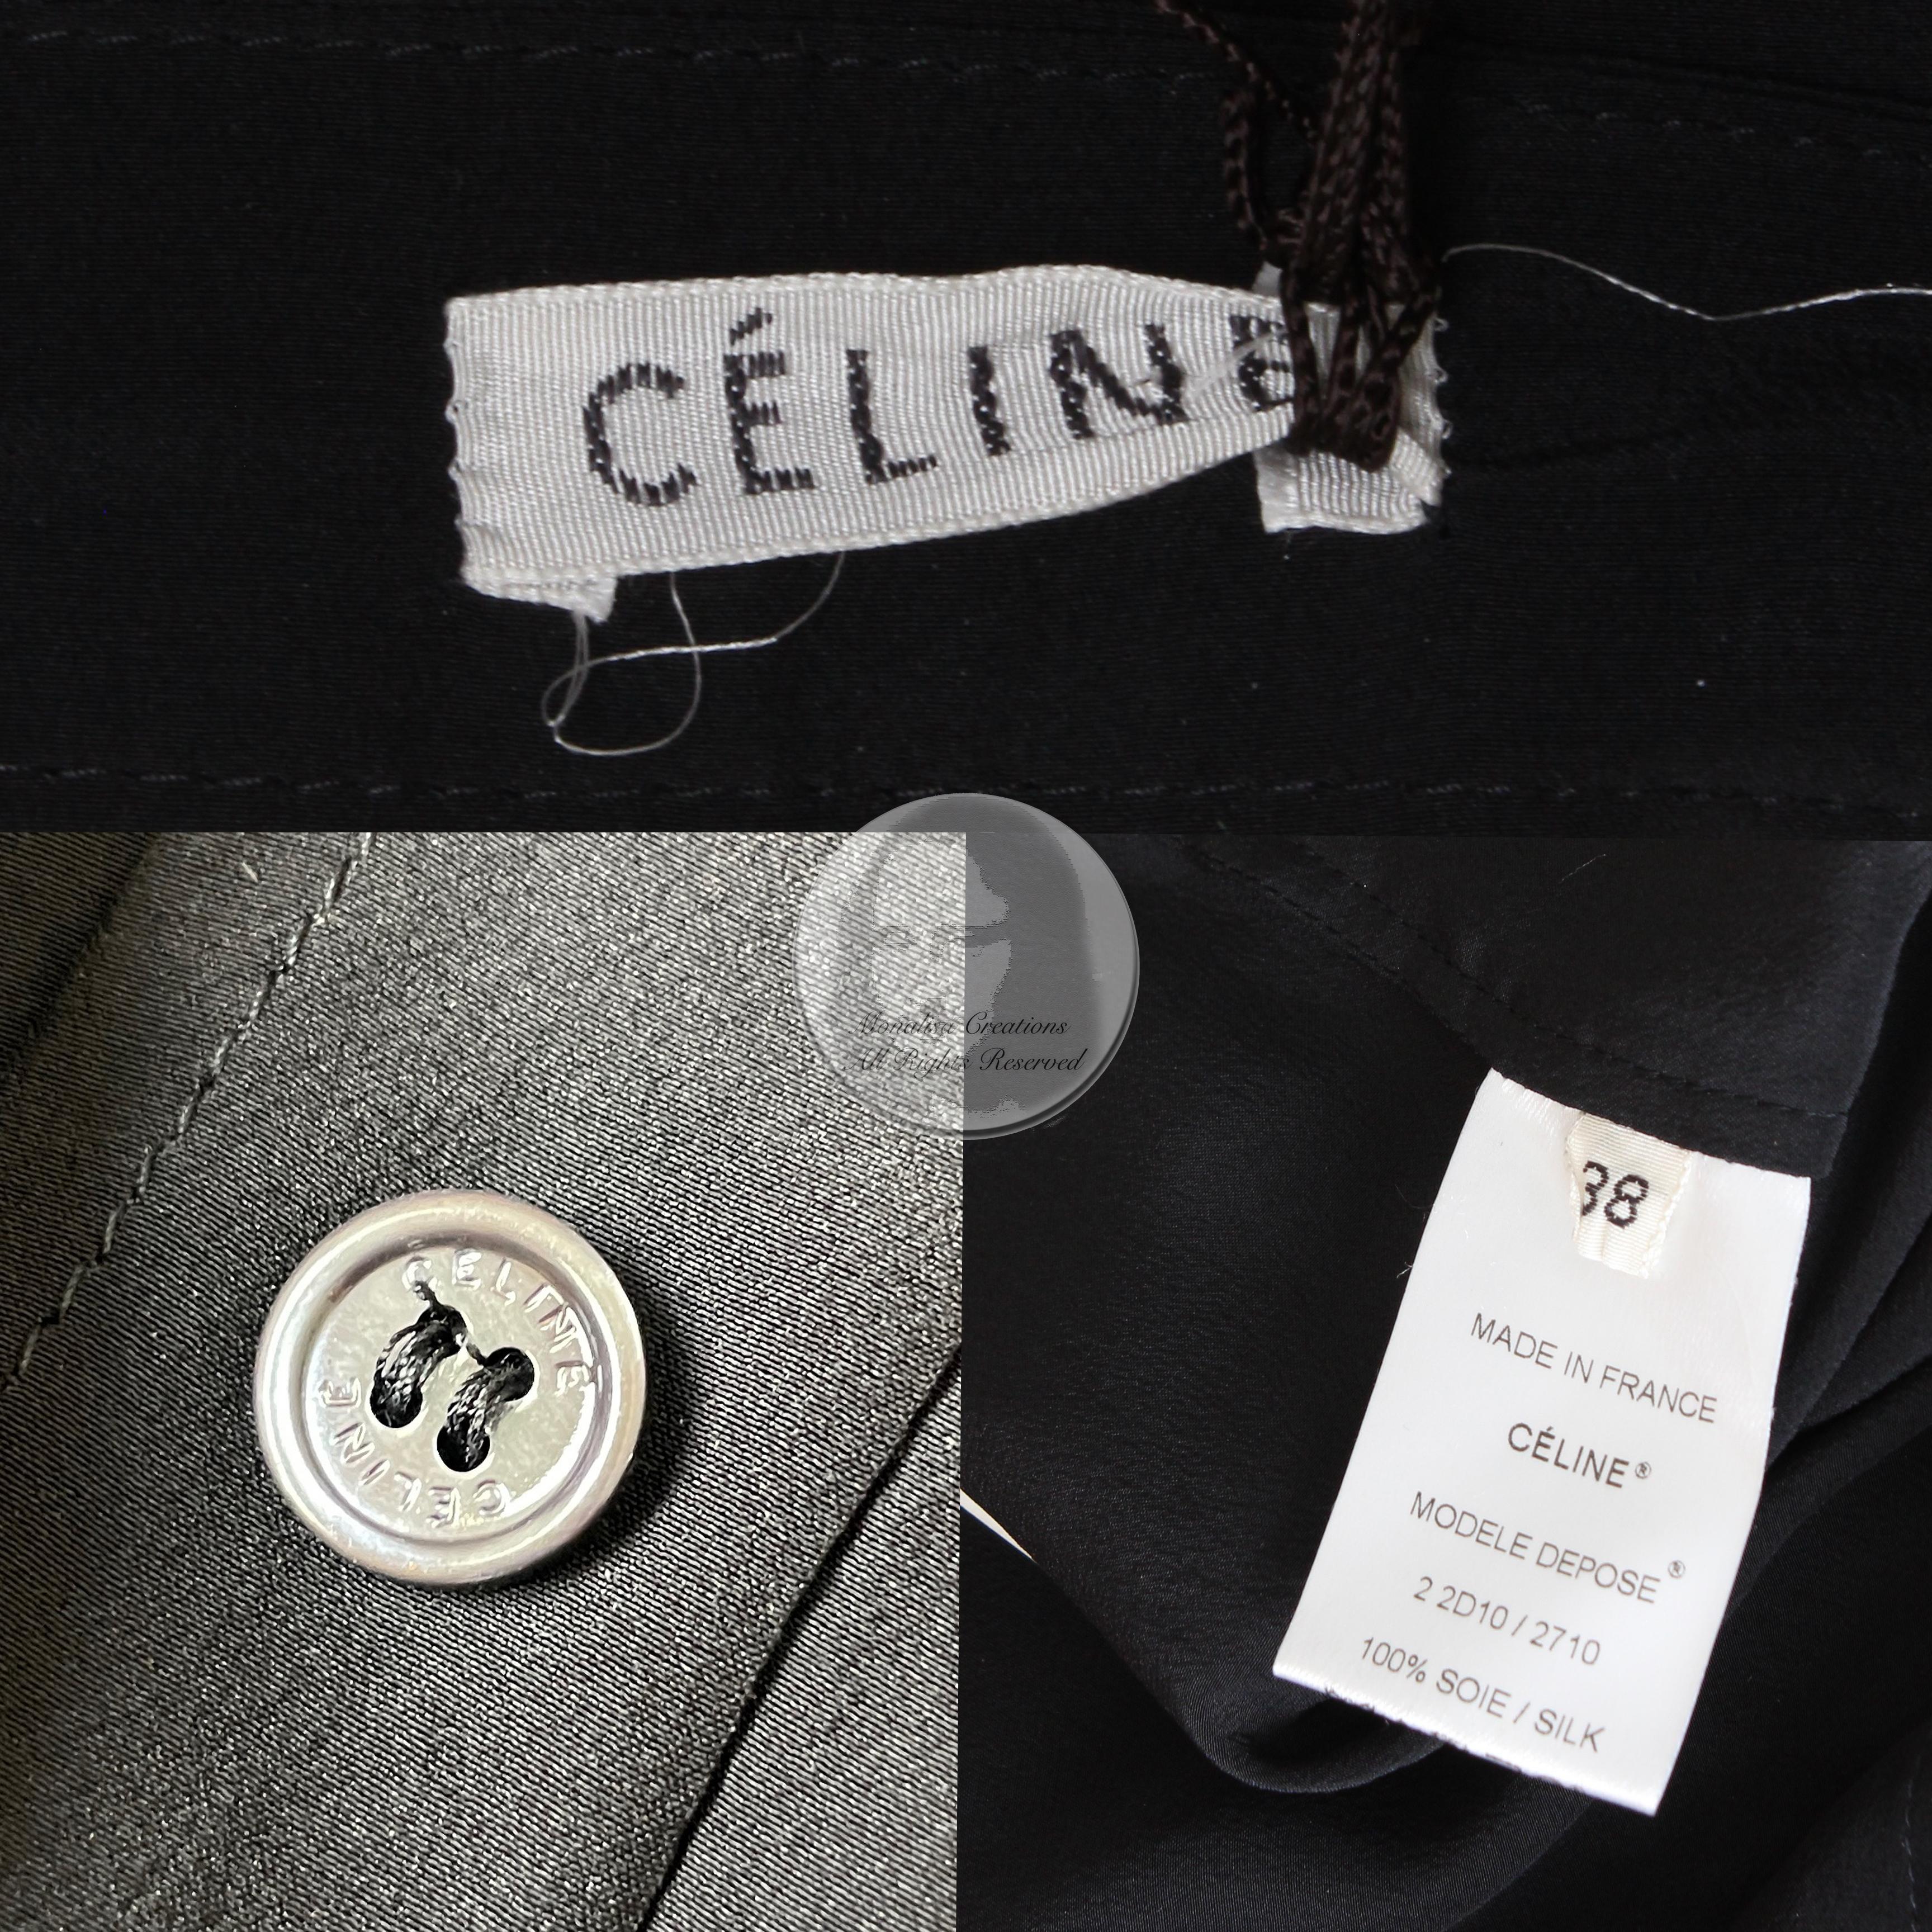 Celine Paris Silk Skirt Button Front Patch Pocket Phoebe Philo Black NWT Size 38 5